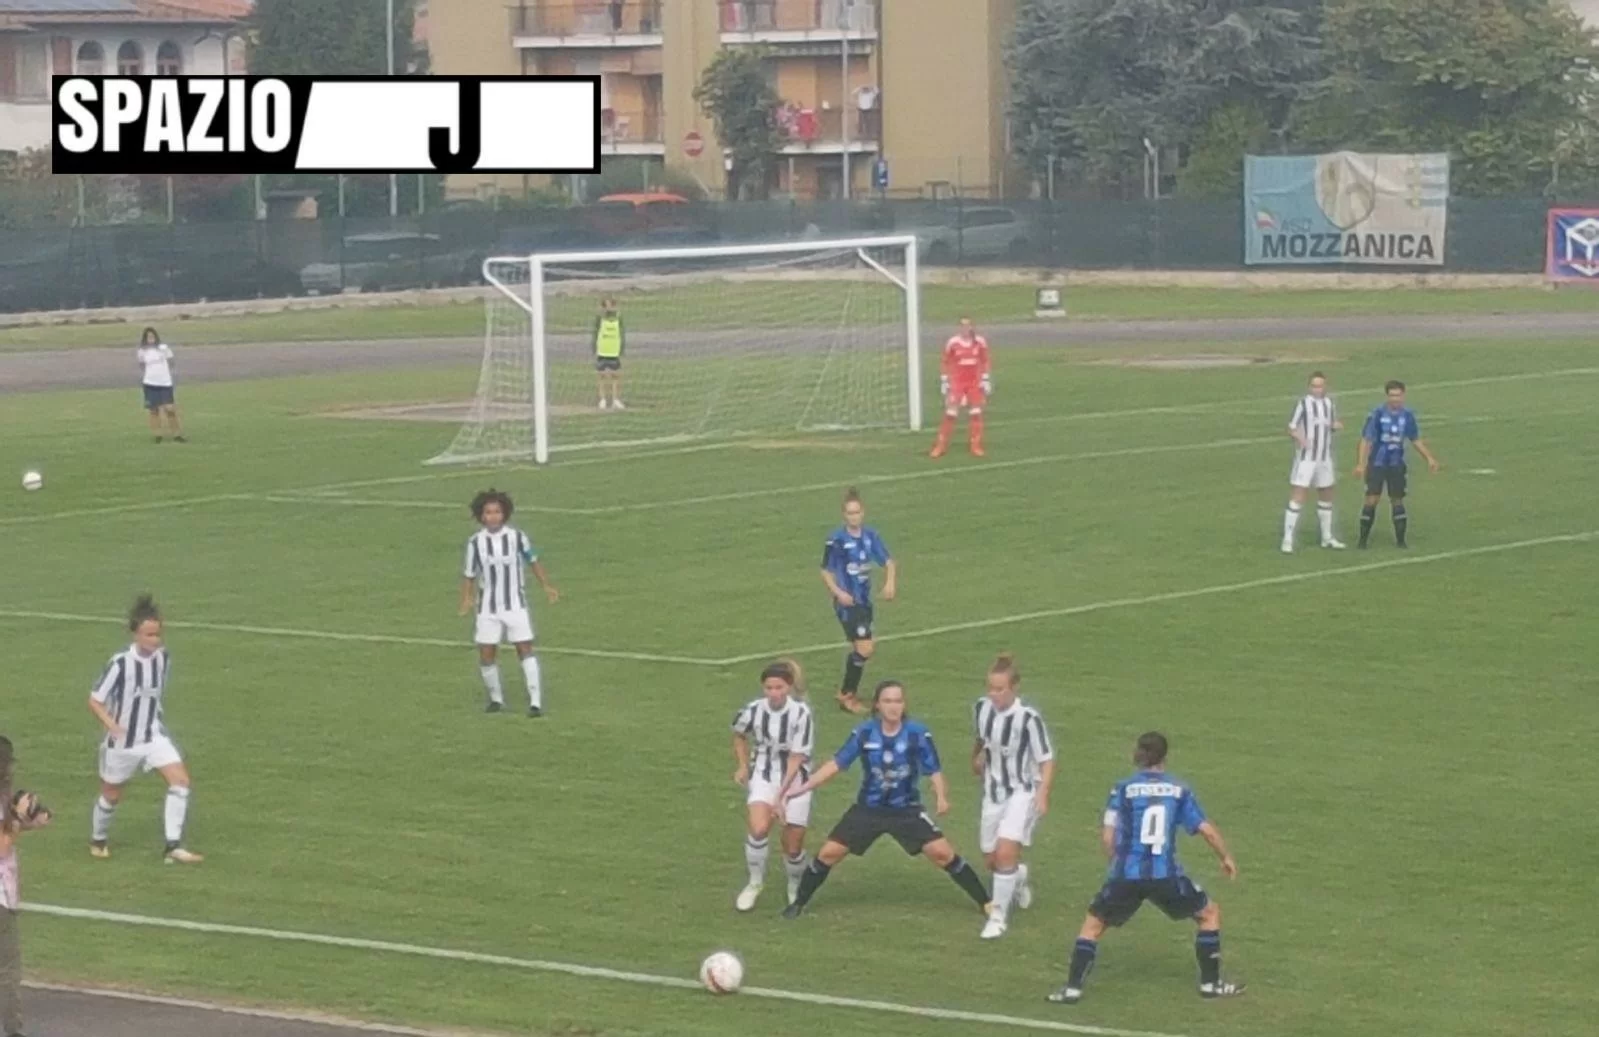 Buonissima Juventus Women, Bonansea sugli scudi nel 3-0 sul Mozzanica